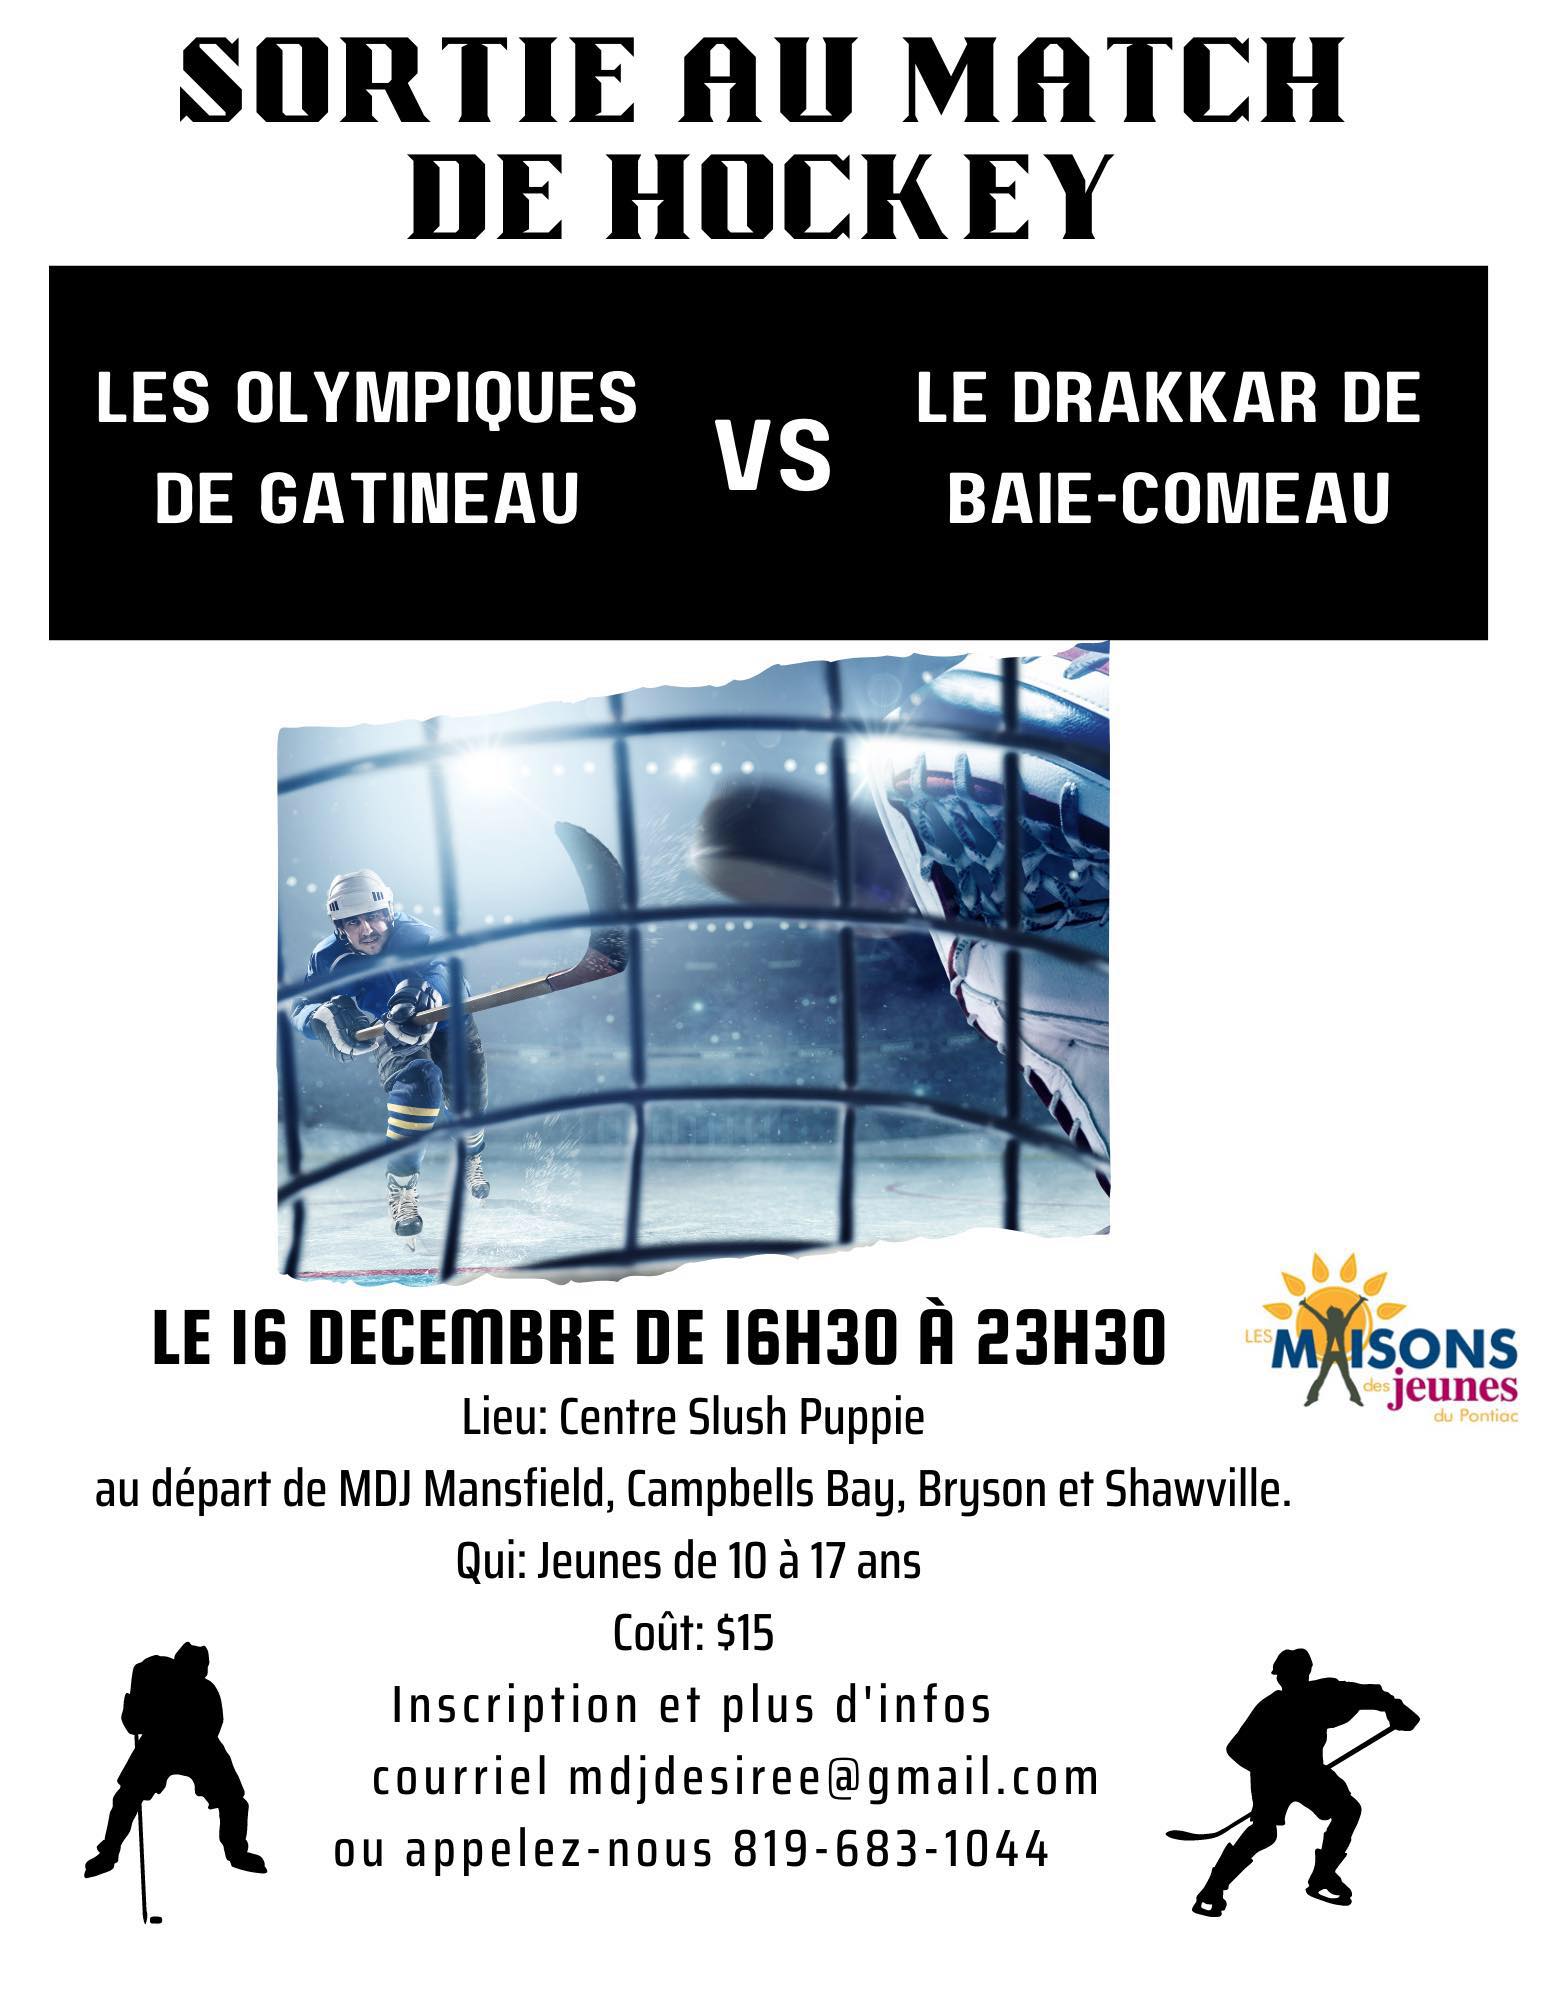 Sortie au match de hockey des Olympiques de Gatineau